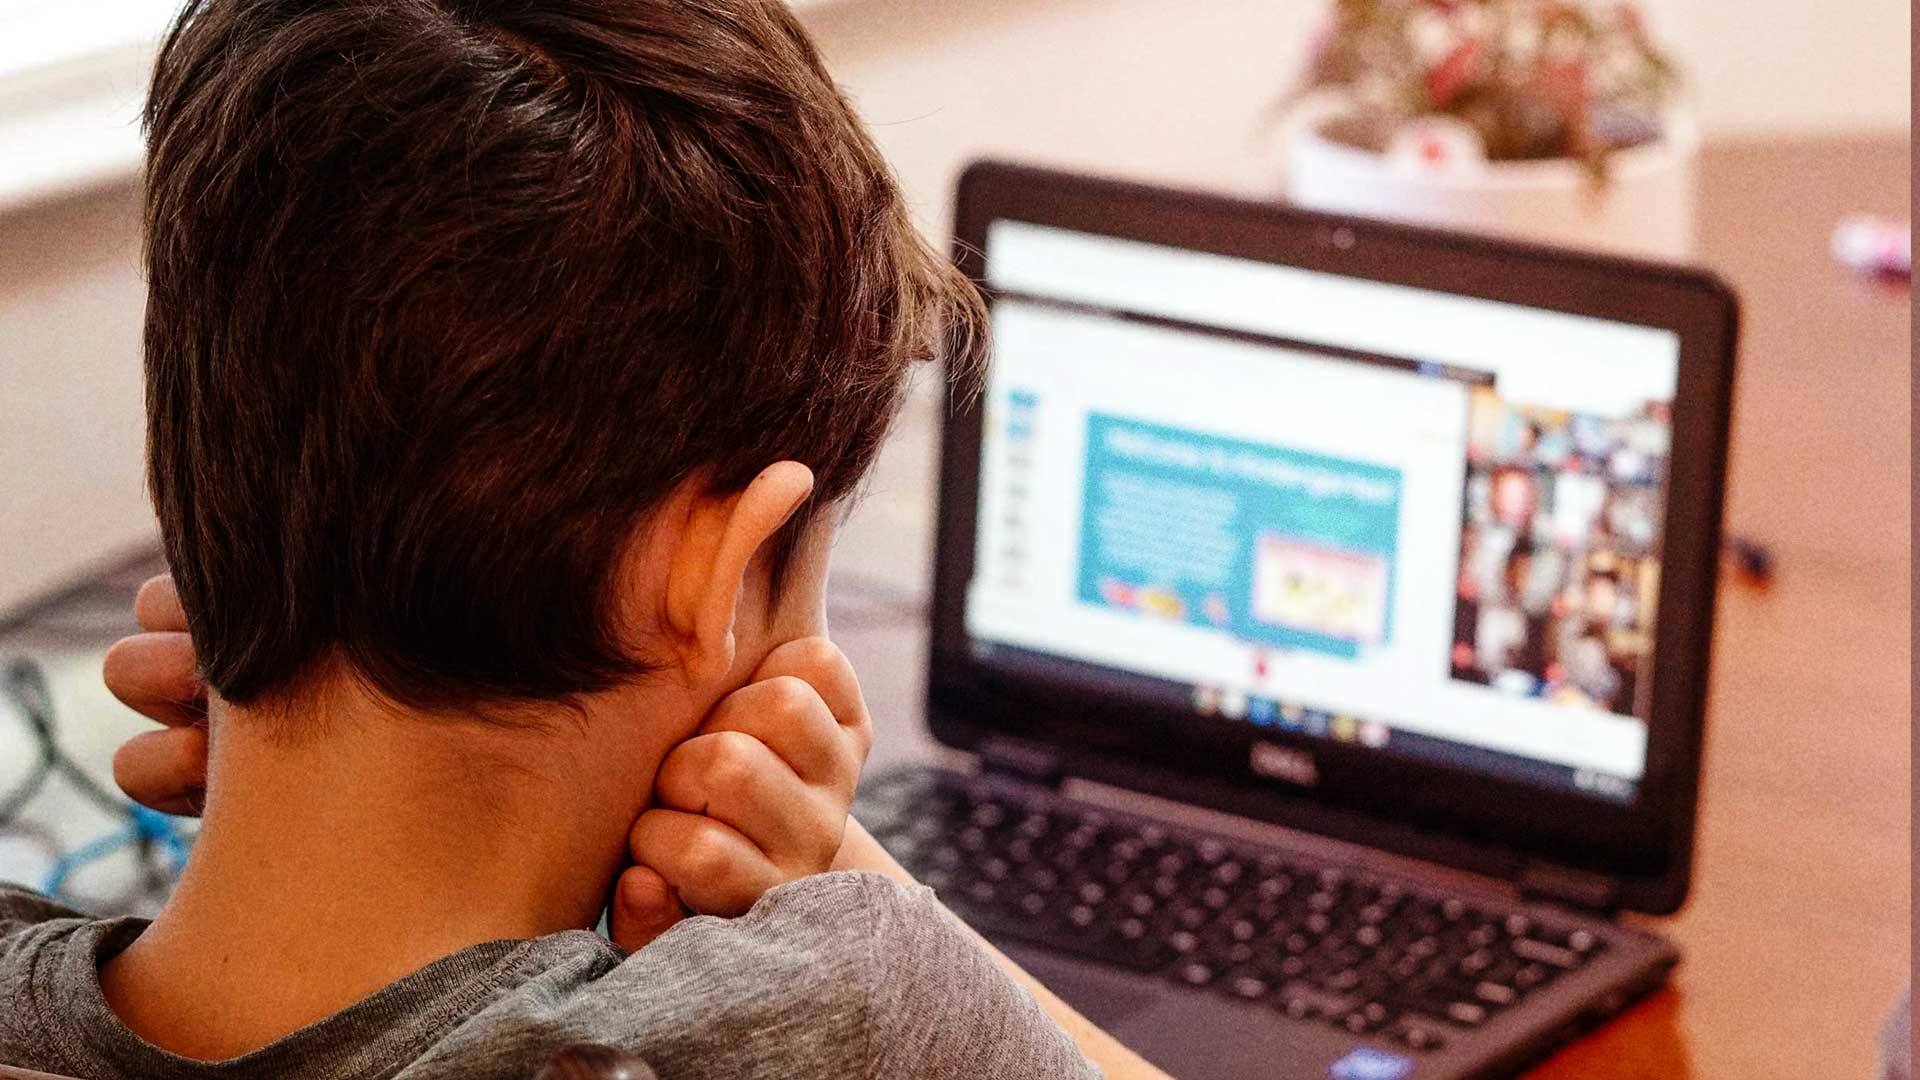 Boy looking at computer